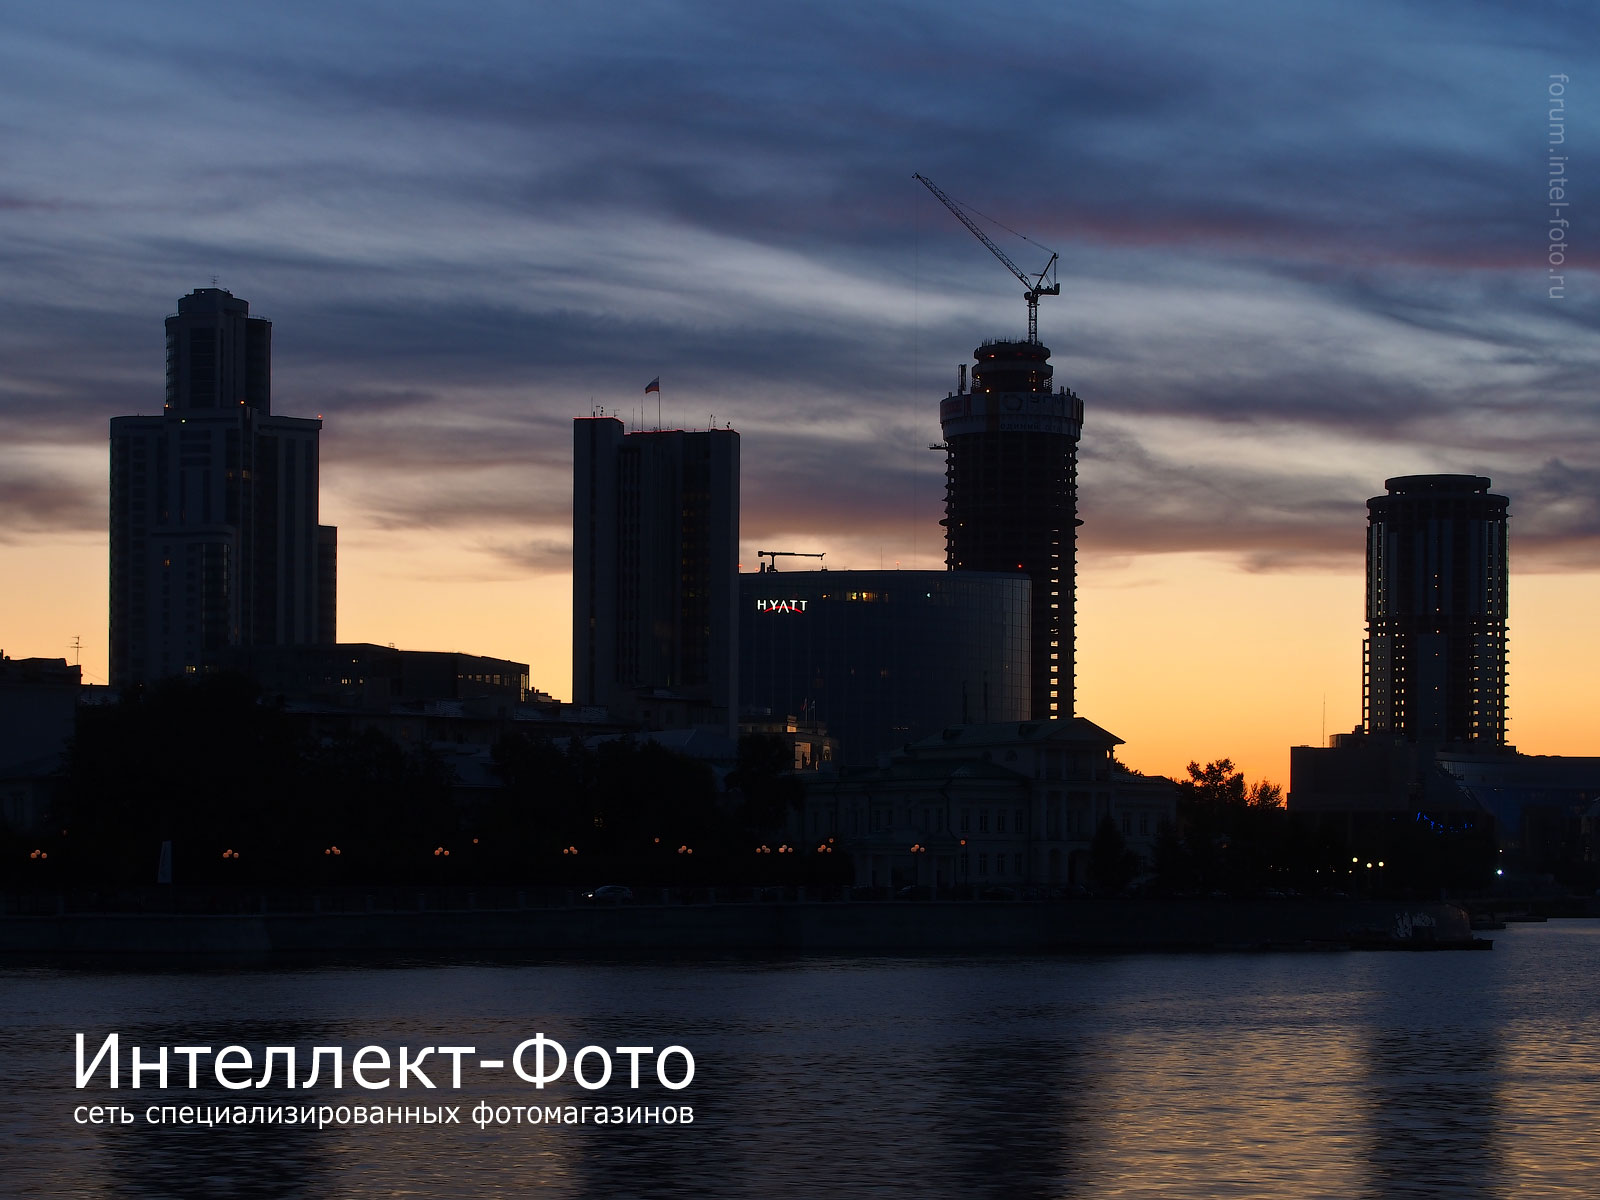 http://www.intel-foto.ru/content/publication/forum-tst/2013/2013-08/PEN_E-P5/tst-p1_cityscape/EP5_1442-11.jpg